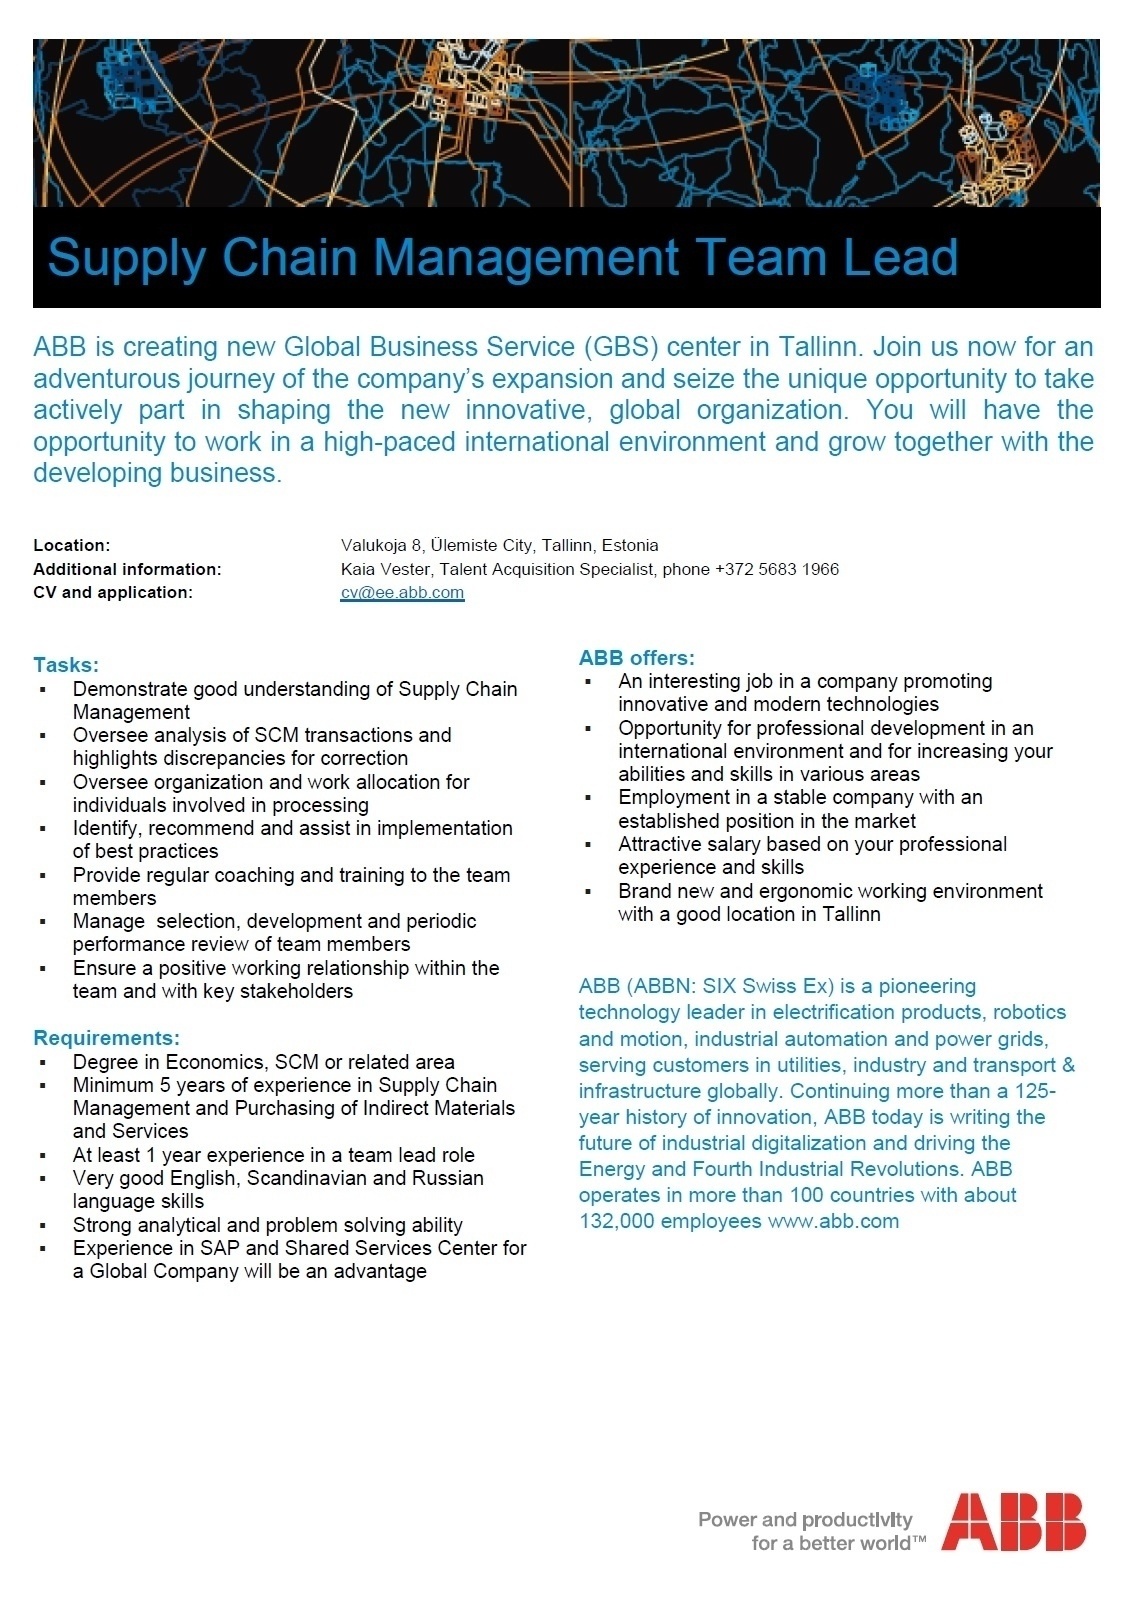 ABB AS Supply Chain Management Team Lead